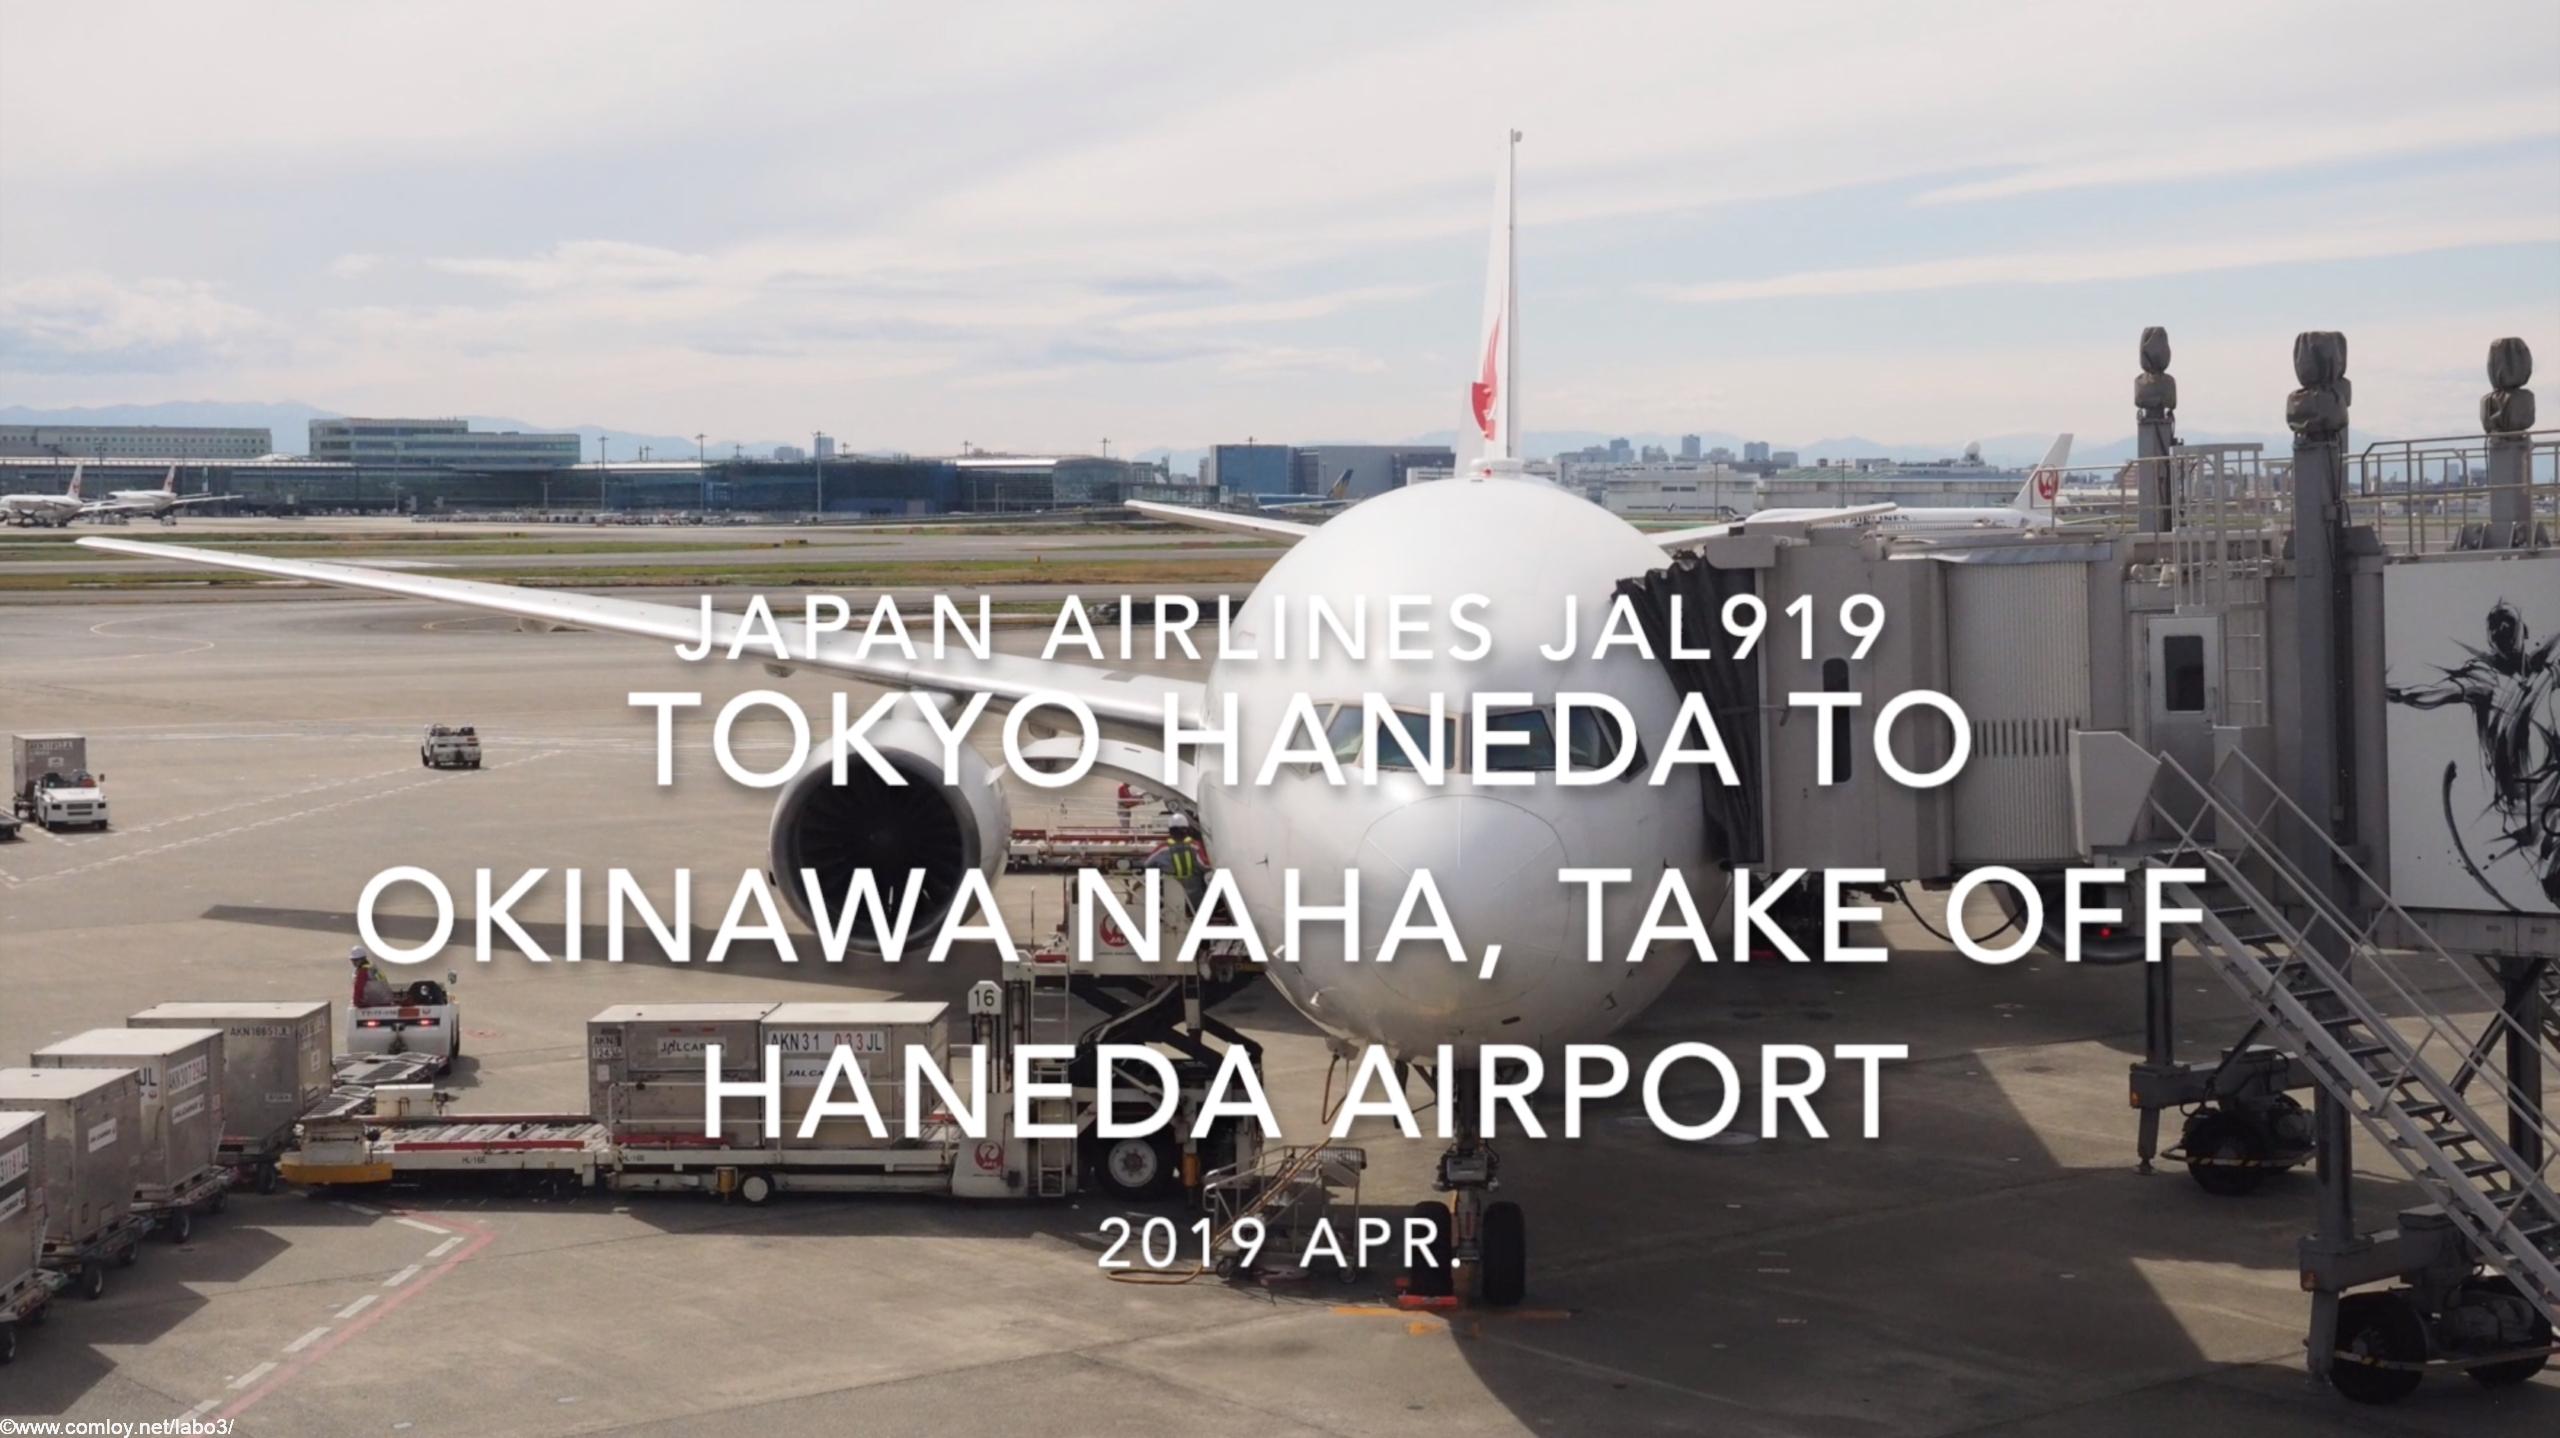 【機内から離着陸映像】2019 Apr JAPAN AIRLINES JAL919 TOKYO HANEDA to OKINAWA NAHA, Take off HANEDA Airport